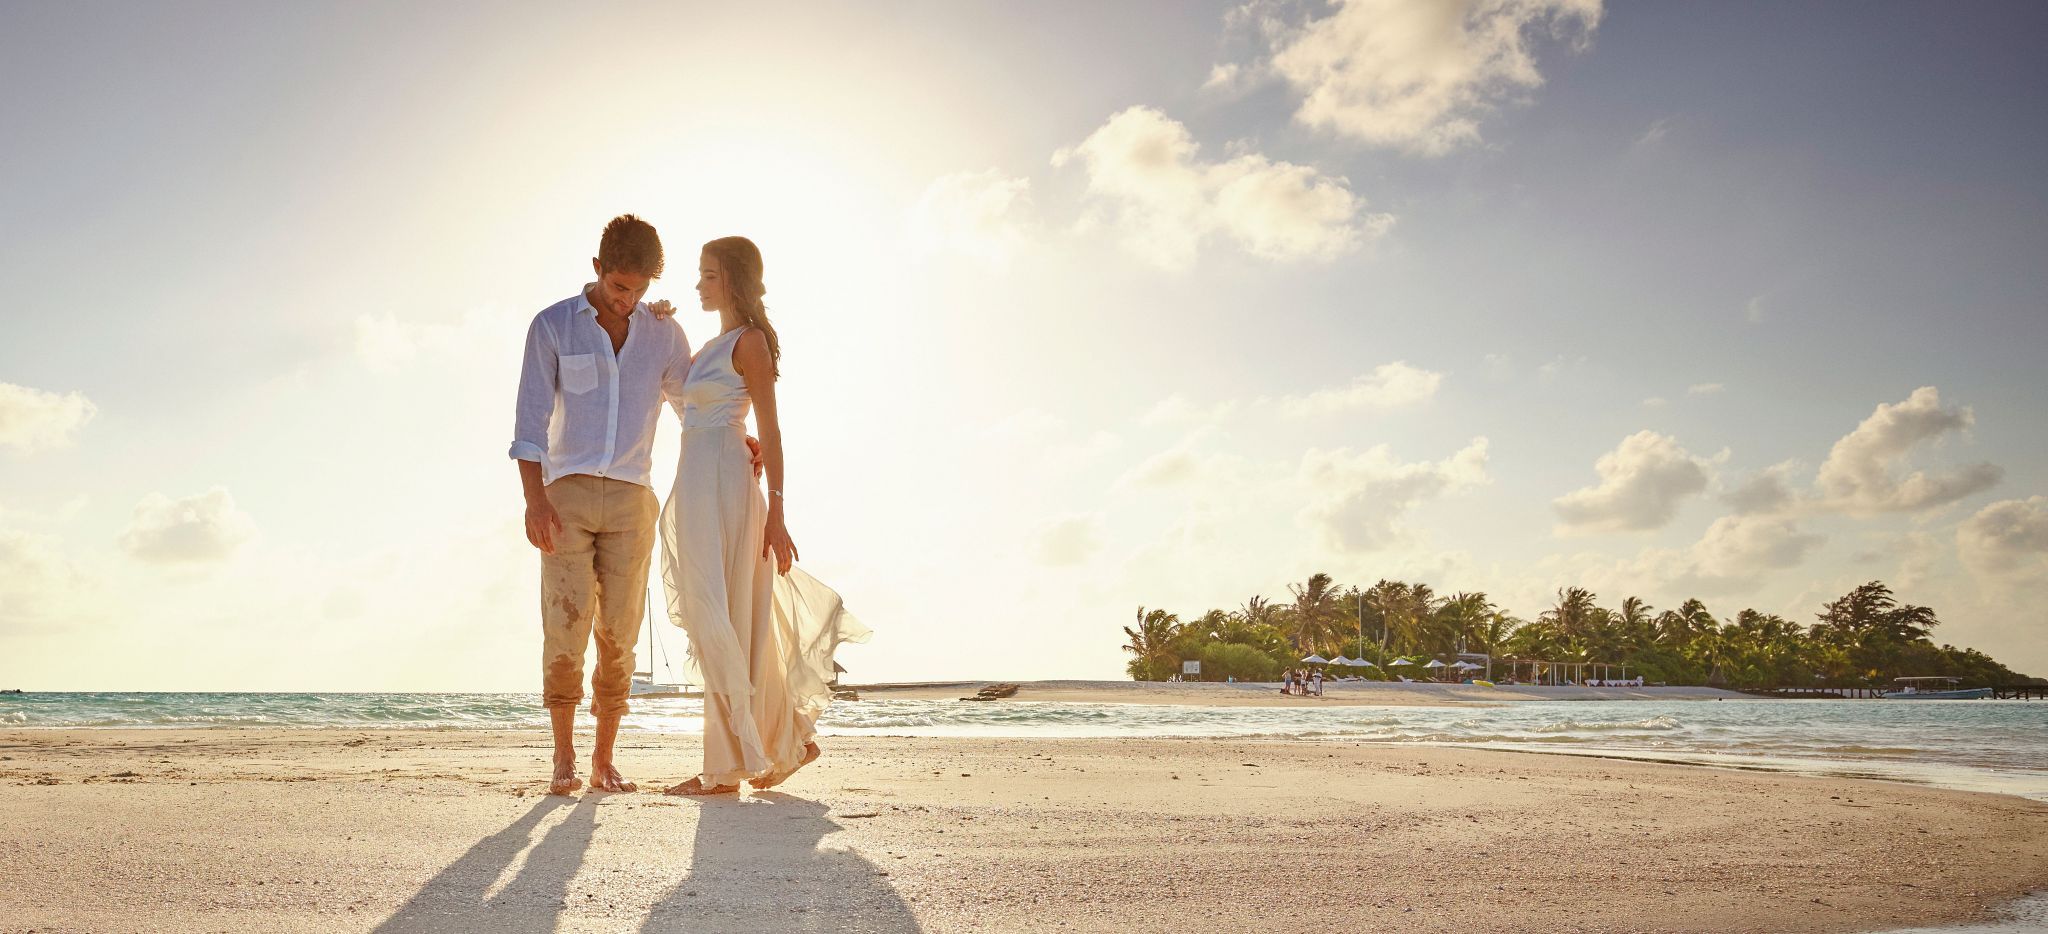 Brautpaar auf Hochzeitsreise vor der Sonne, Malediven